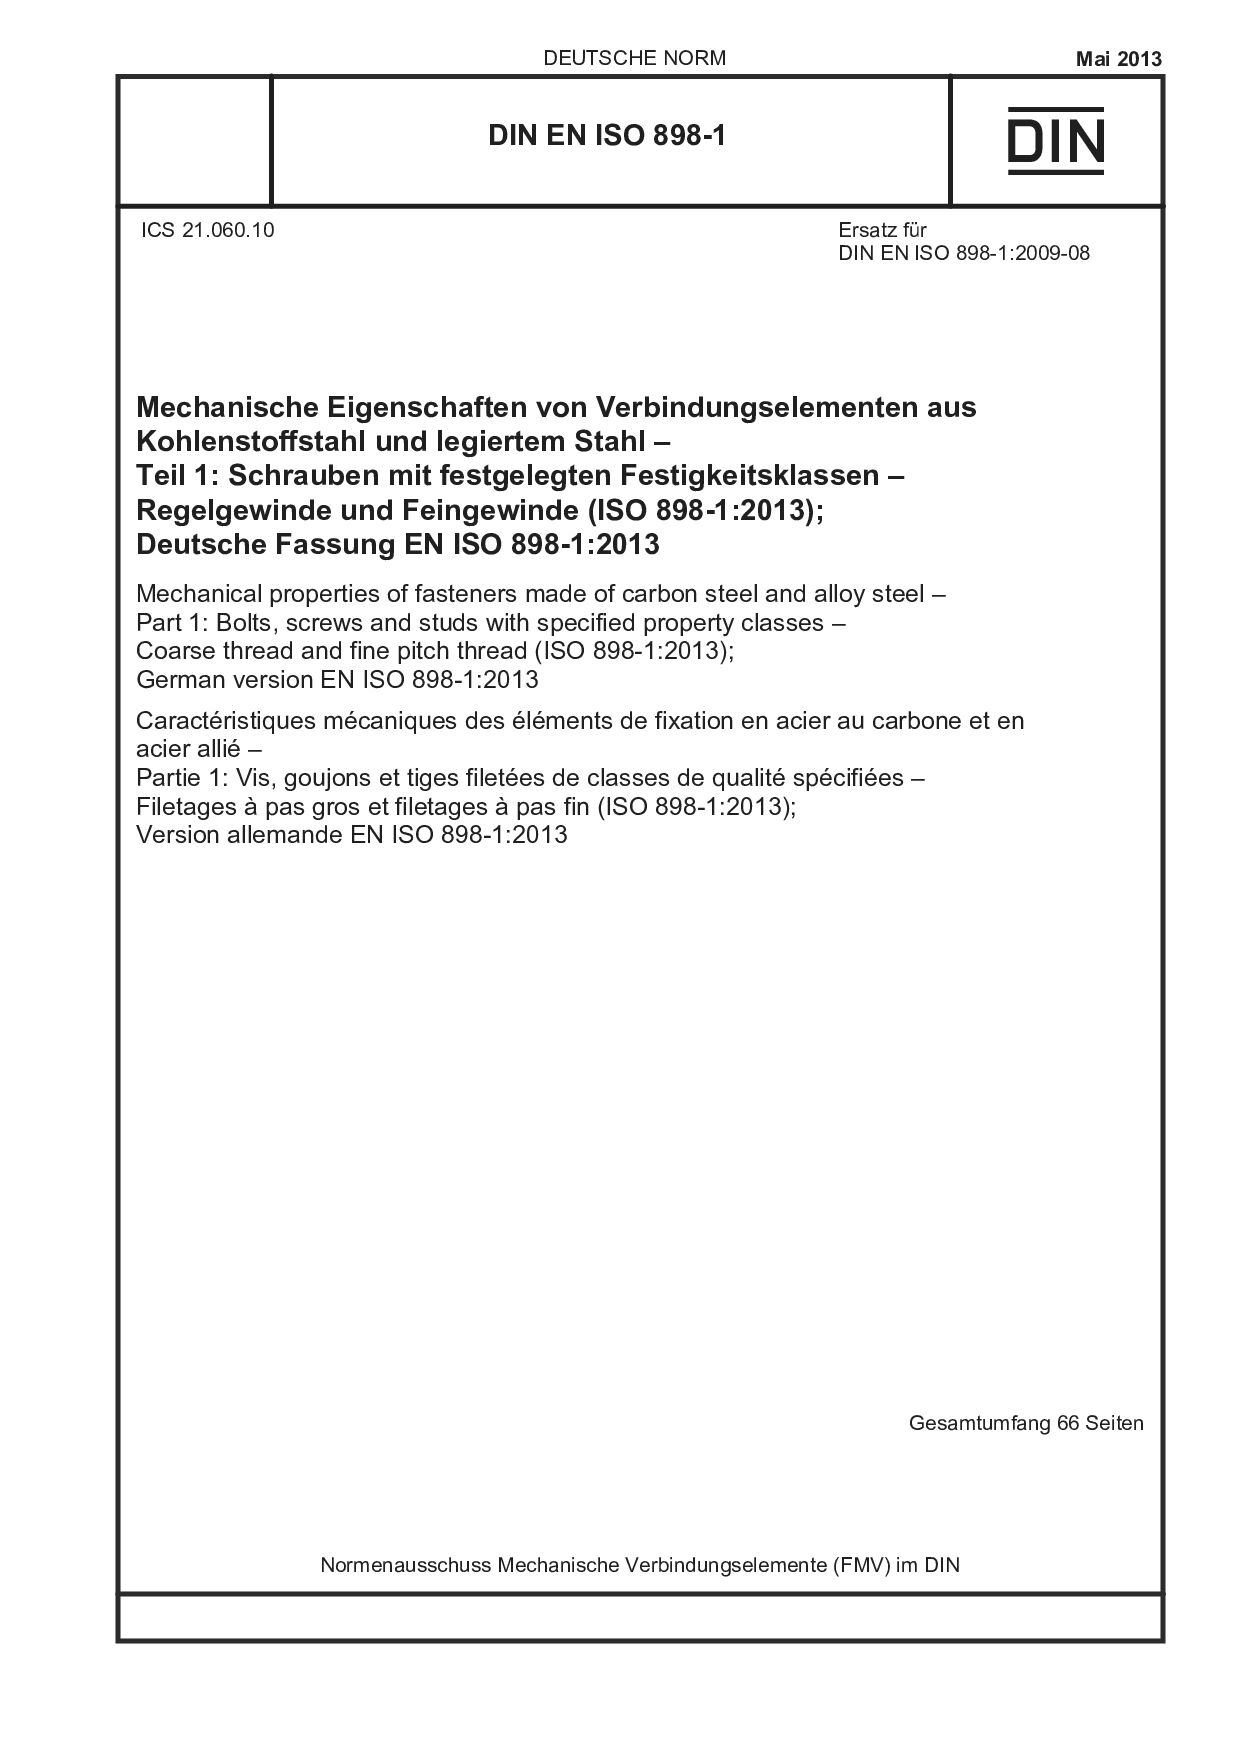 DIN EN ISO 898-1:2013封面图